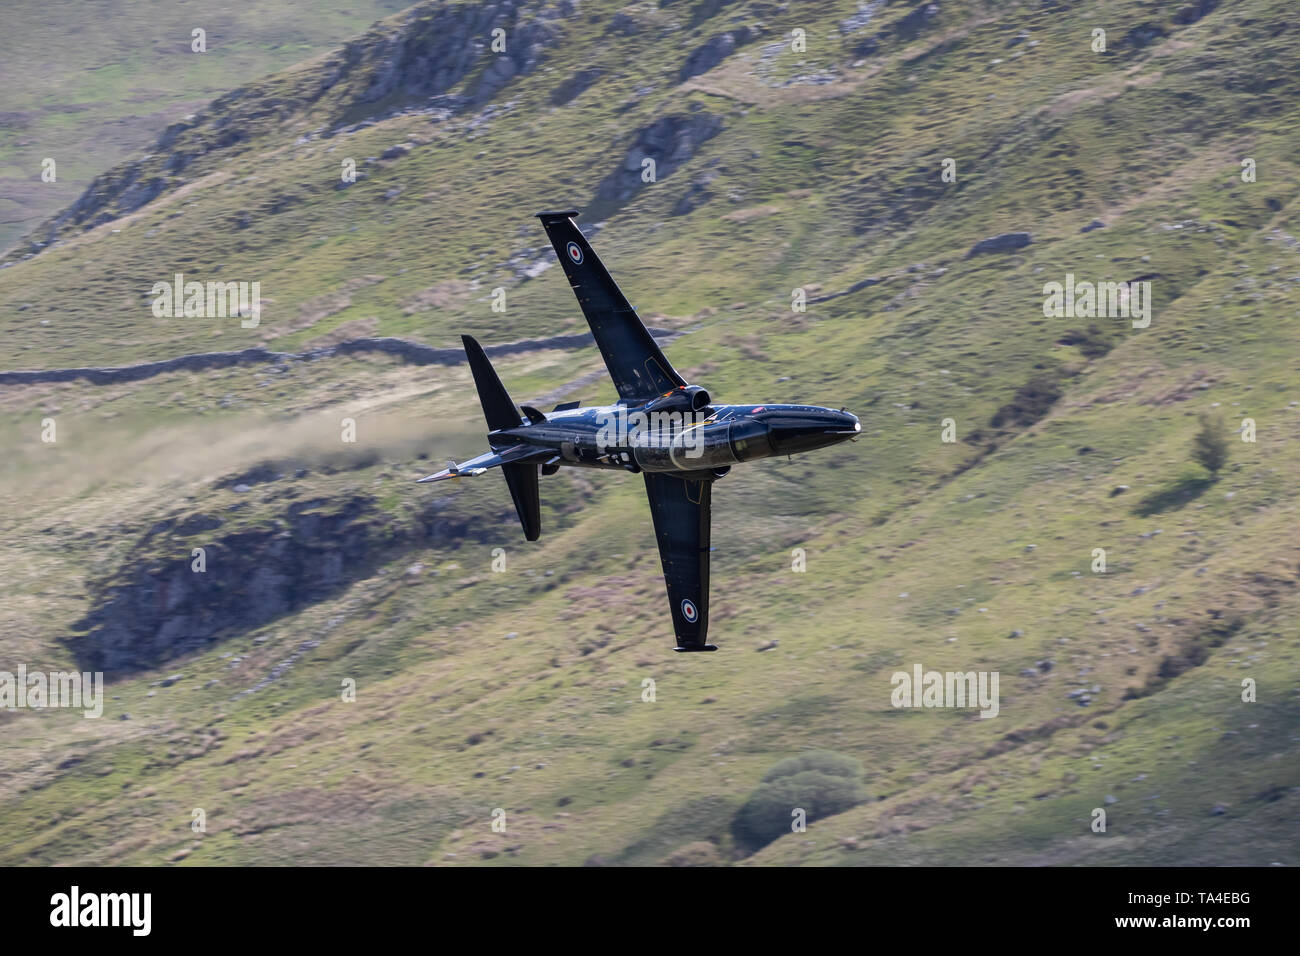 An RAF Hawk practices low level fling through LFA7, Mach Loop, near Dolgellau, Wales UK. Stock Photo